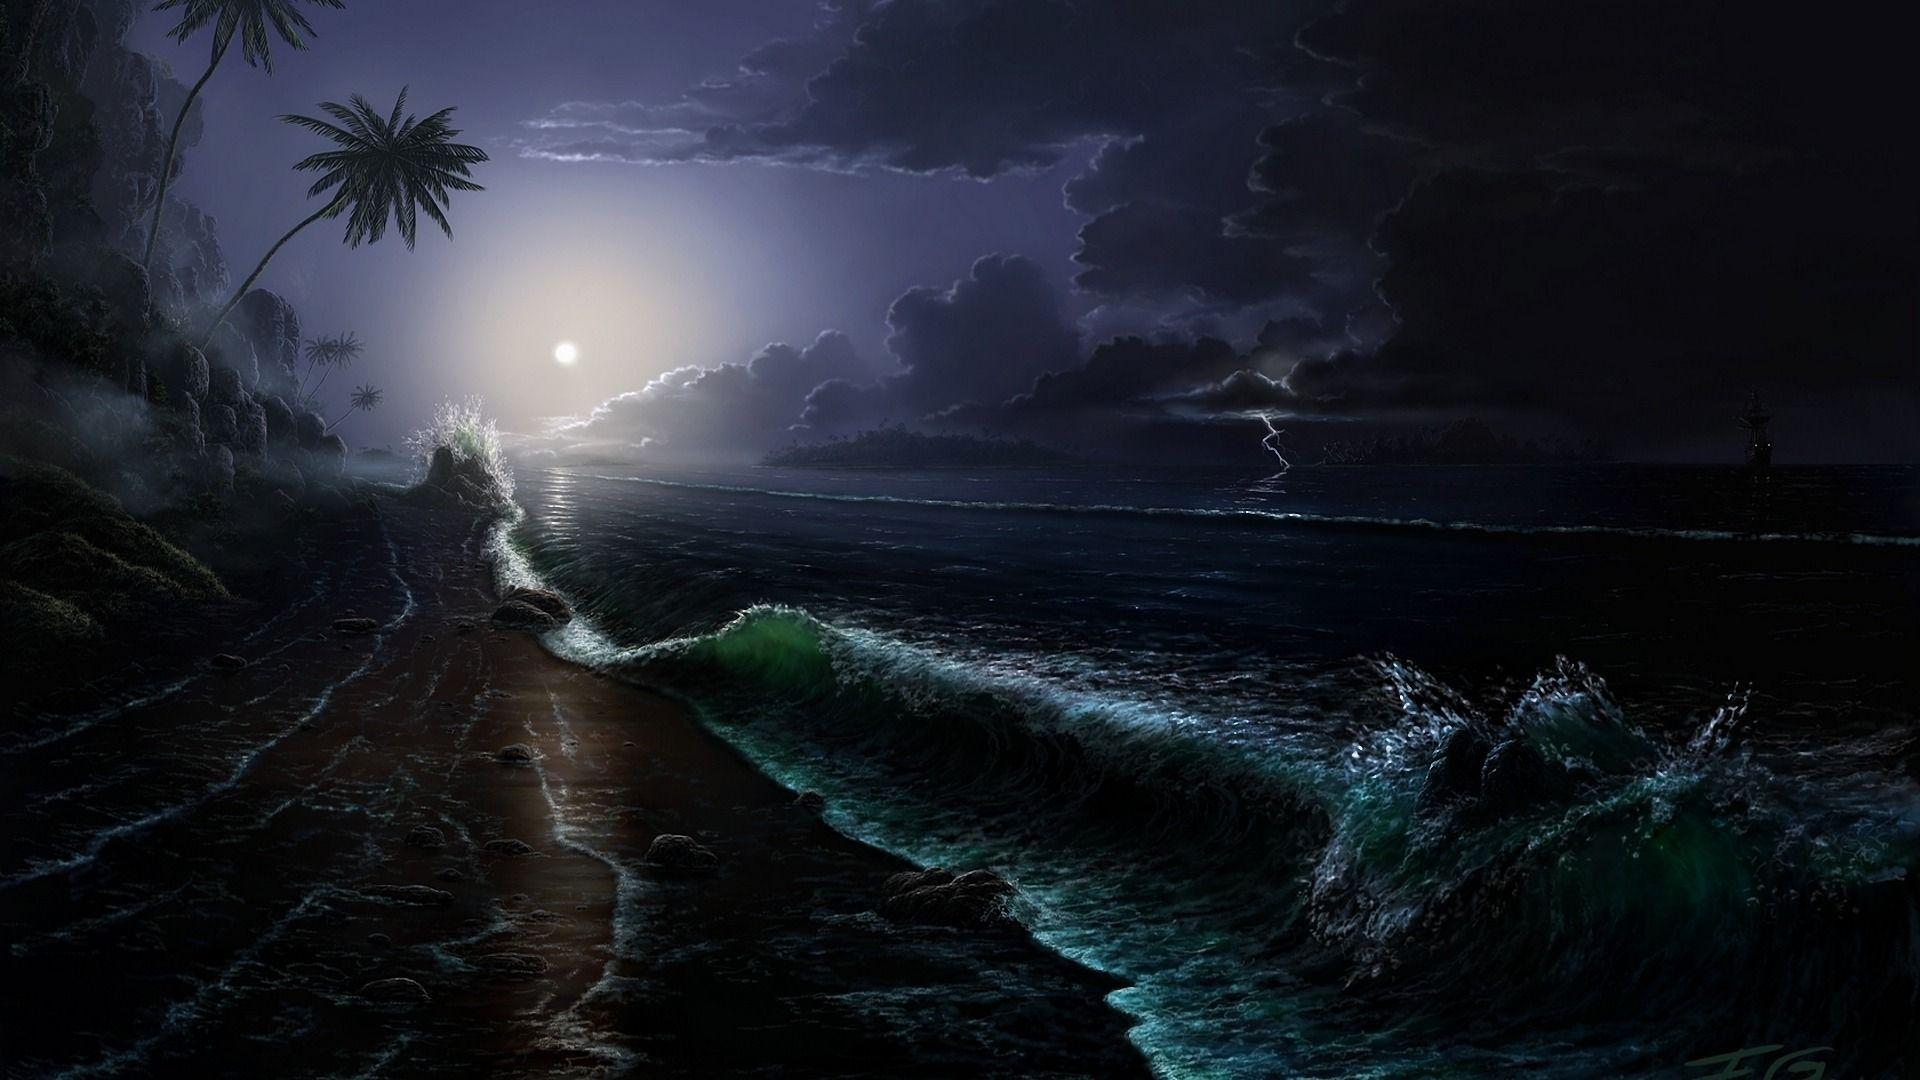 Download Wallpaper sea tropics black clouds night wave palm, 1920x Tropical Storm 3D